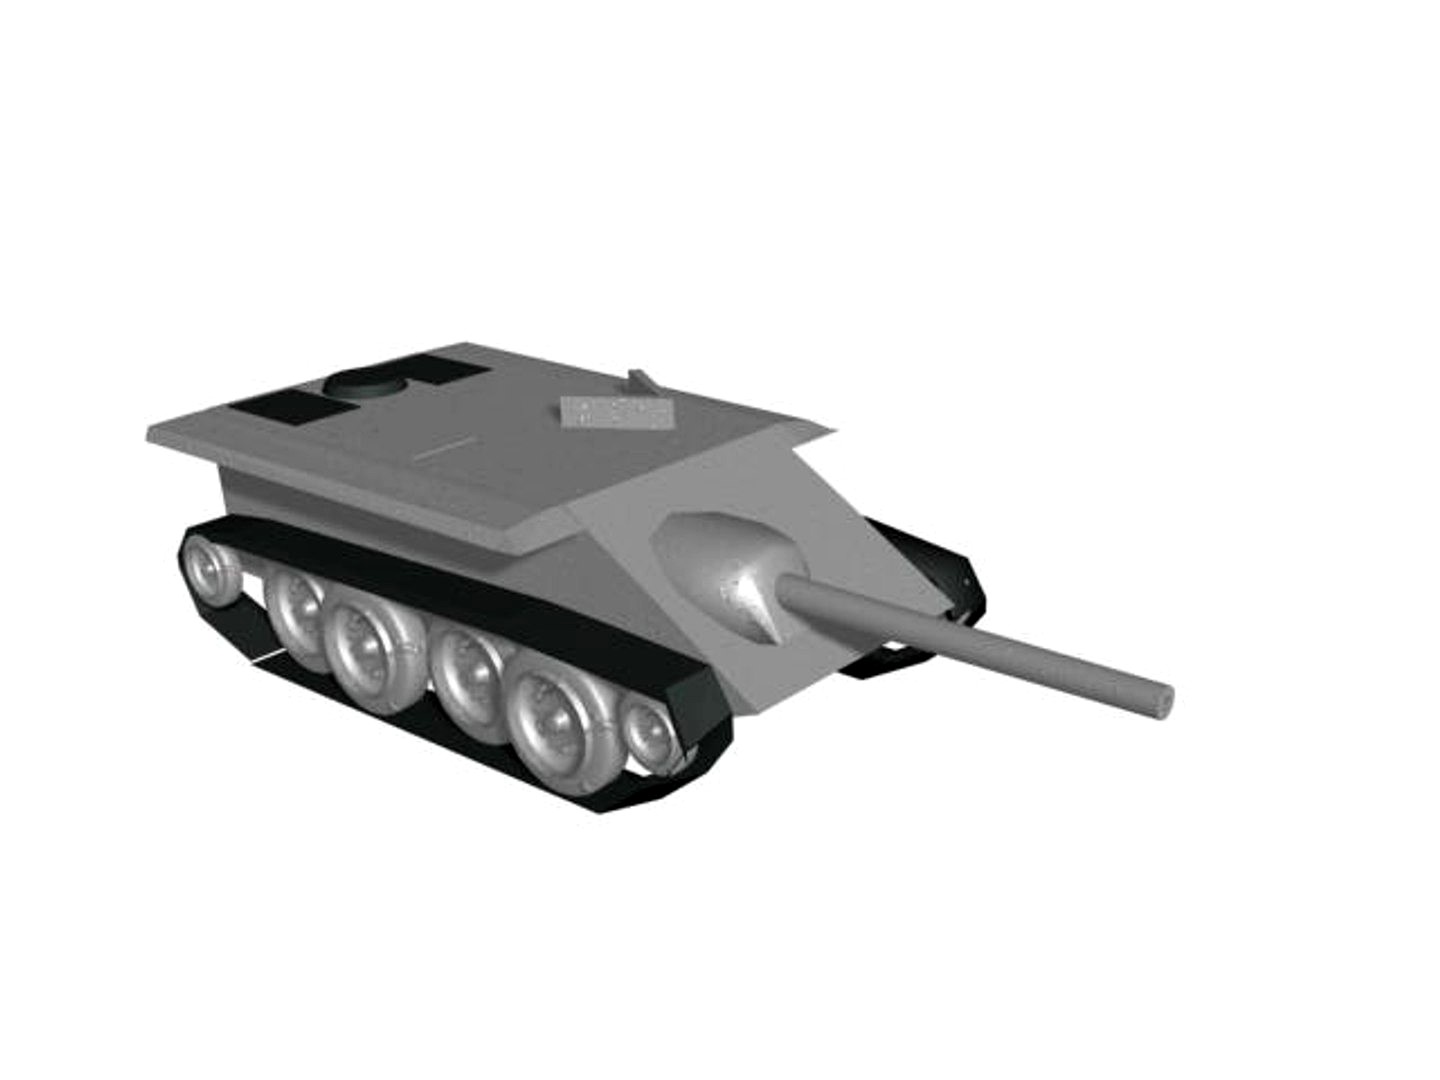 Late WW2 German project E10 anty tank